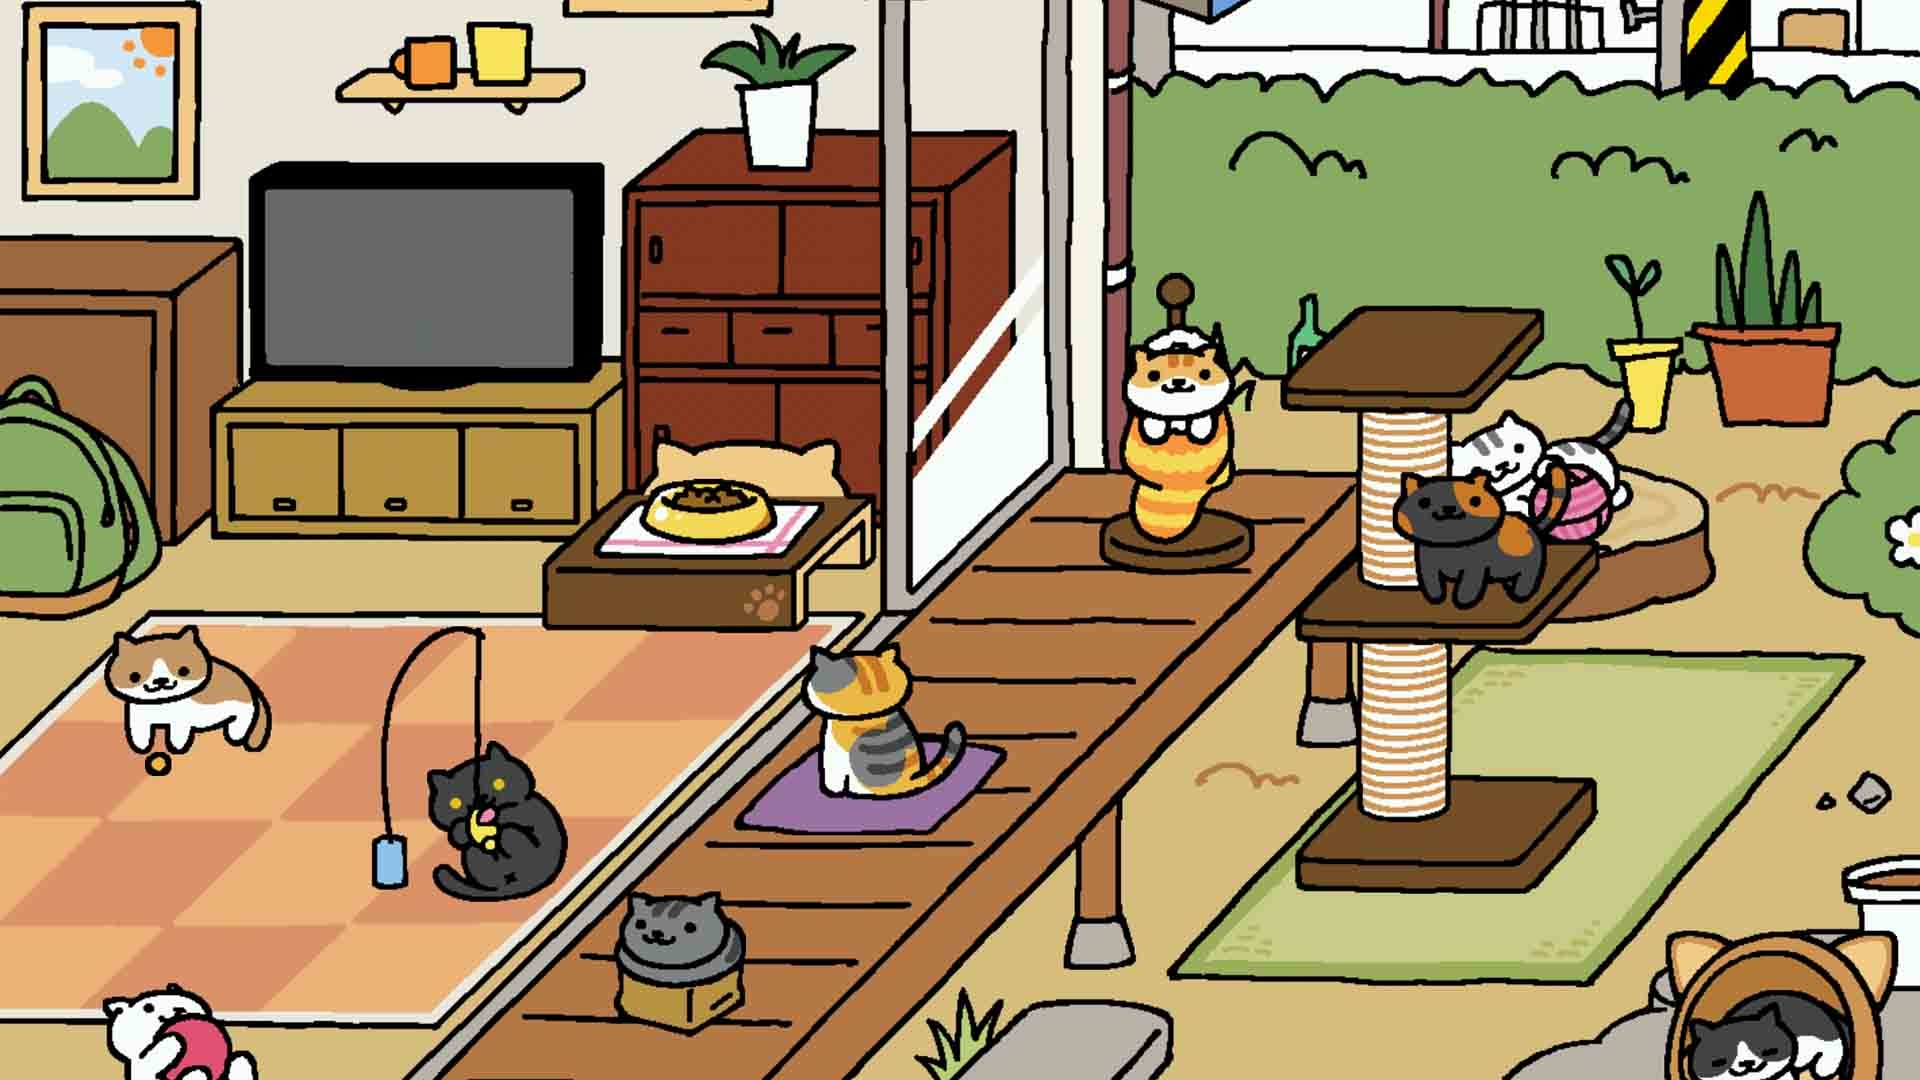 Tựa game nuôi mèo nổi tiếng "Neko Atsume" chính thức hỗ trợ tiếng Anh